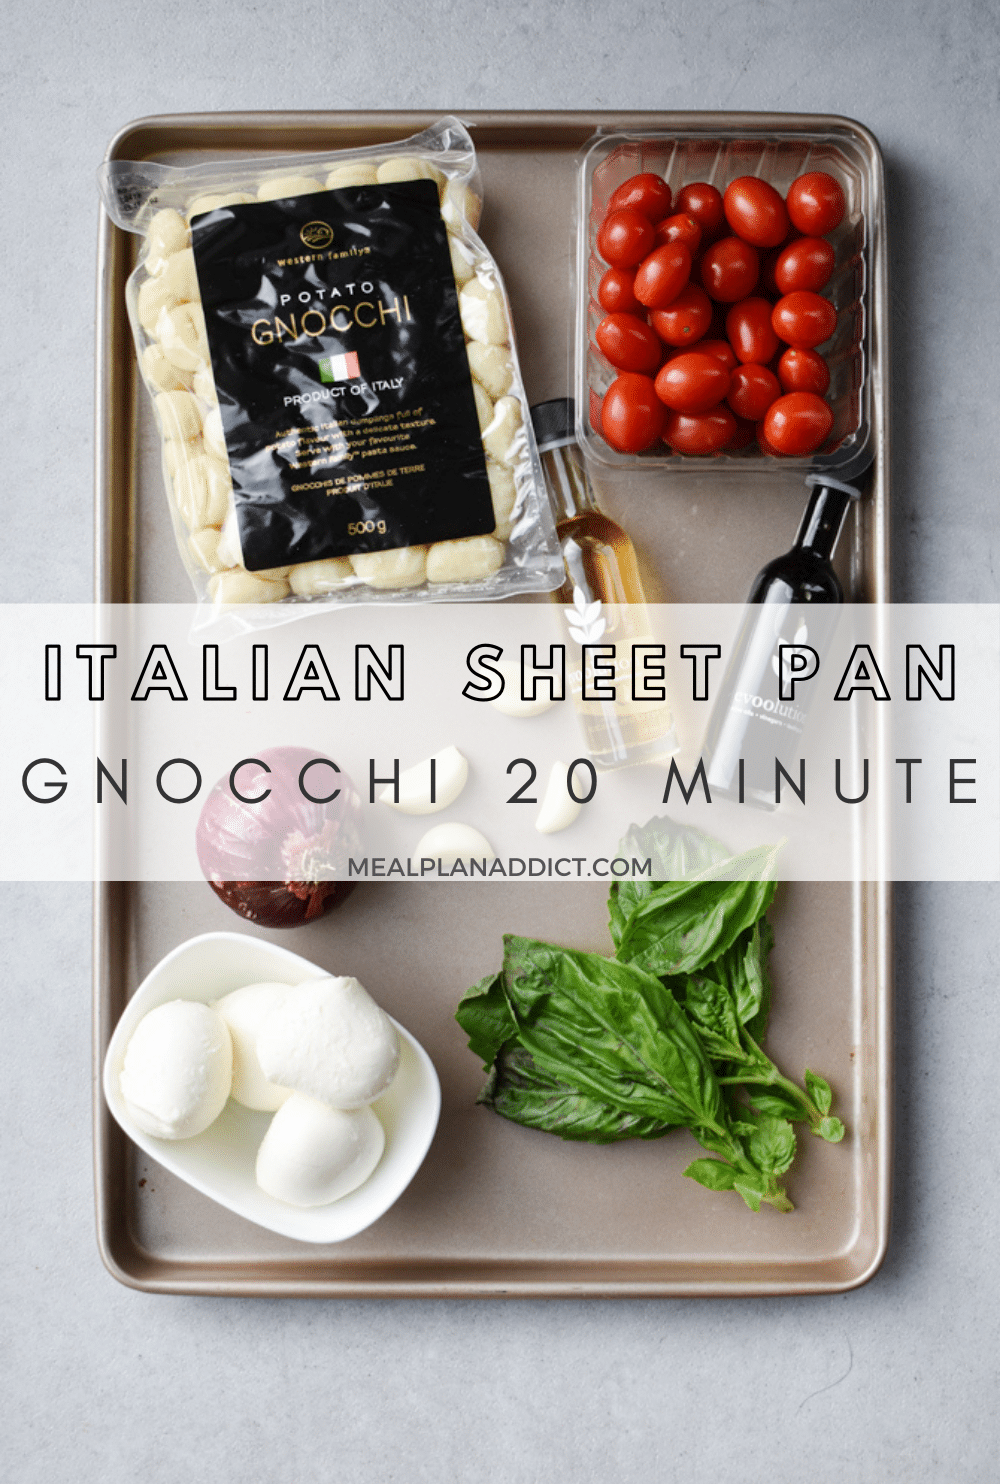 Sheet pan gnocchi pin for Pinterest